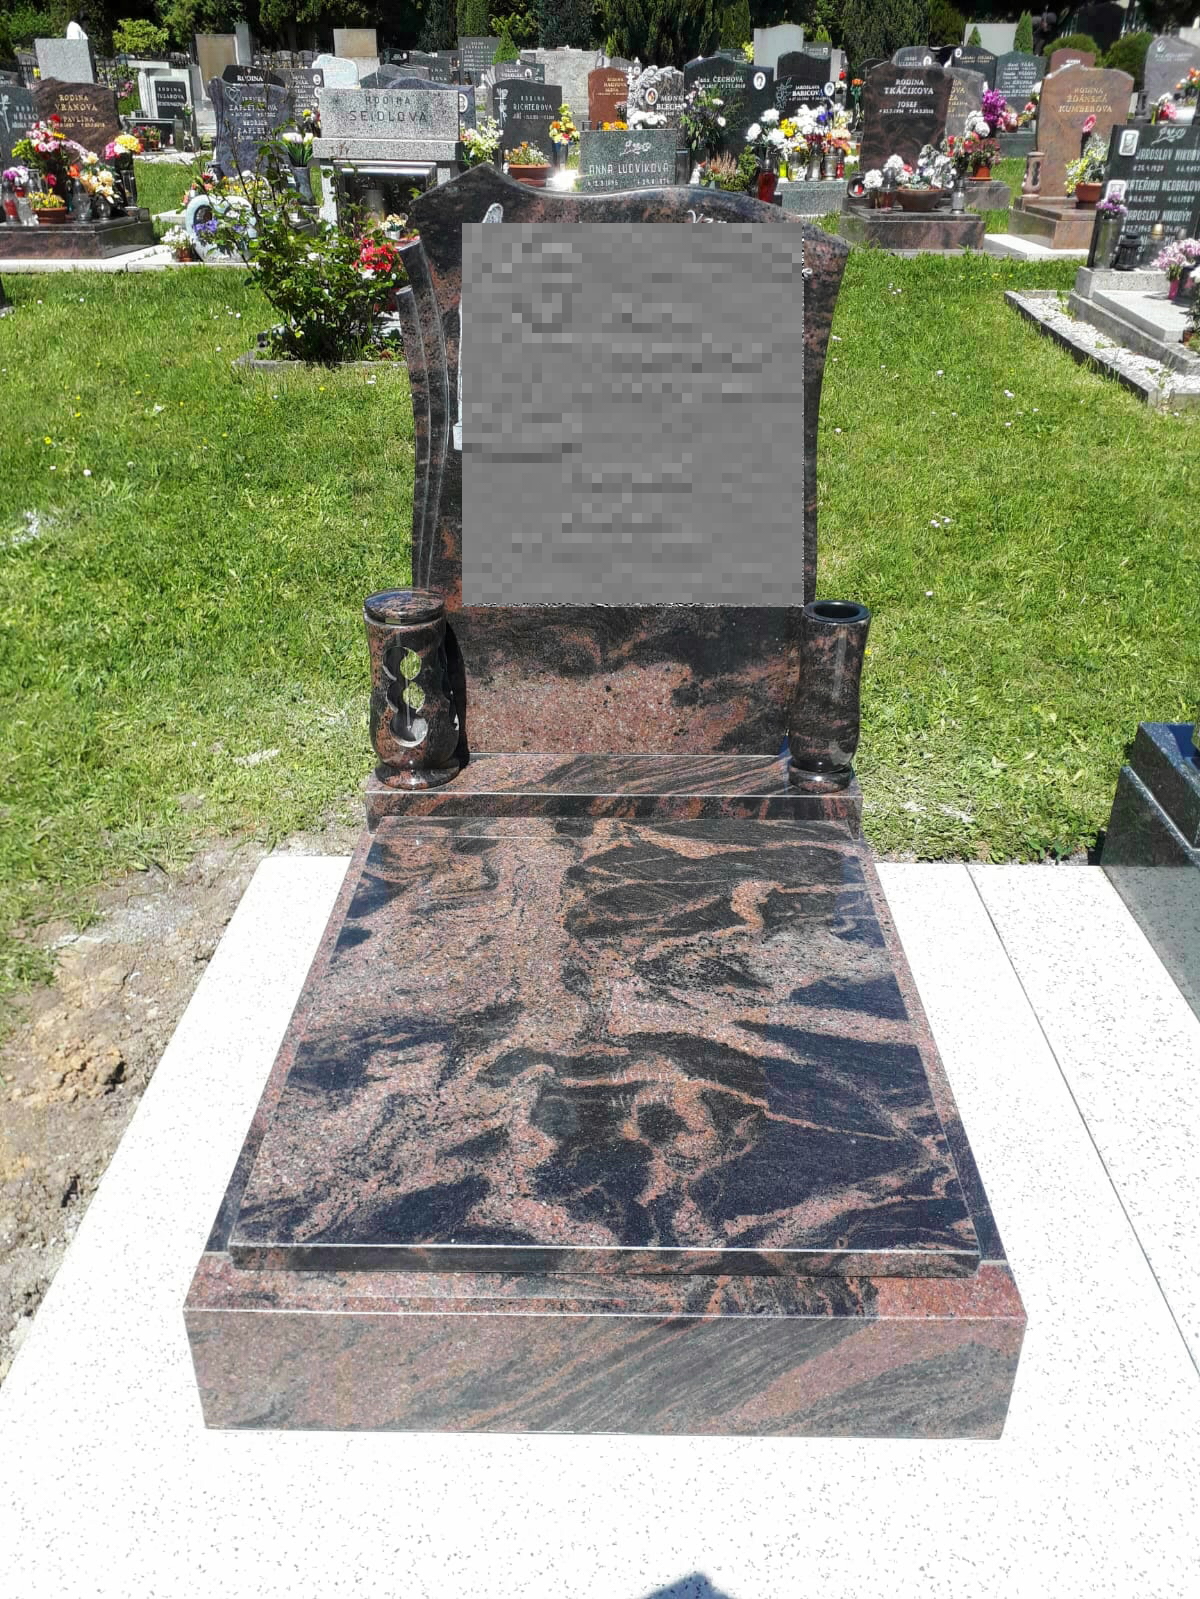 ilustrační foto identického náhrobního kamene